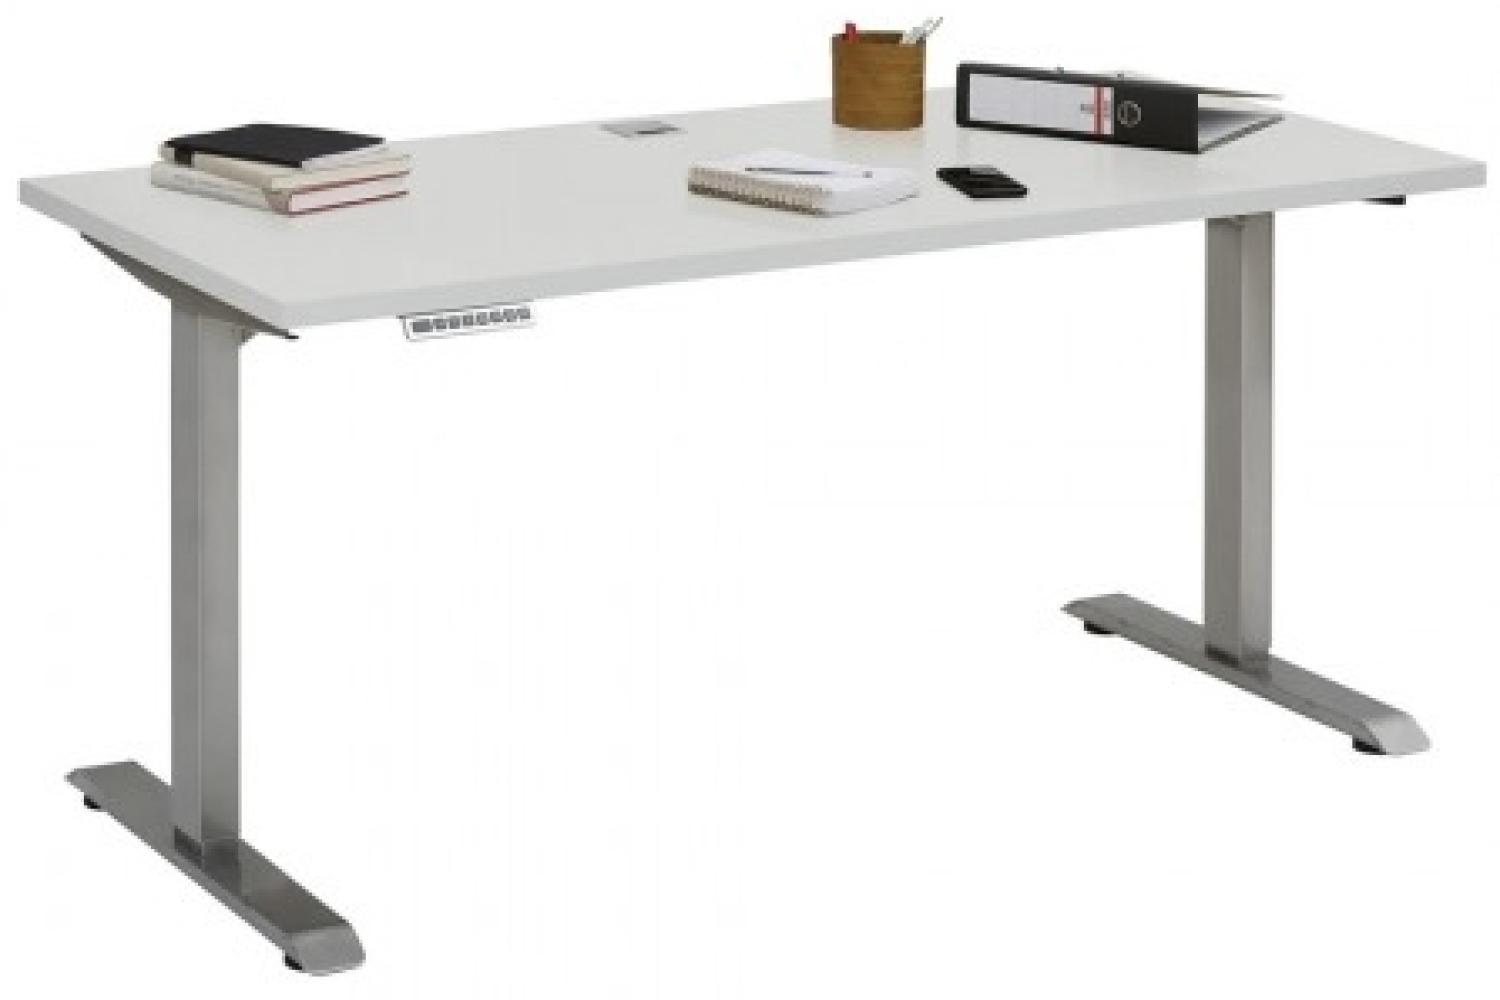 Maja Höhenverstellbarer Schreibtisch 5507 Roheisen natur lackiert - platingrau Bild 1